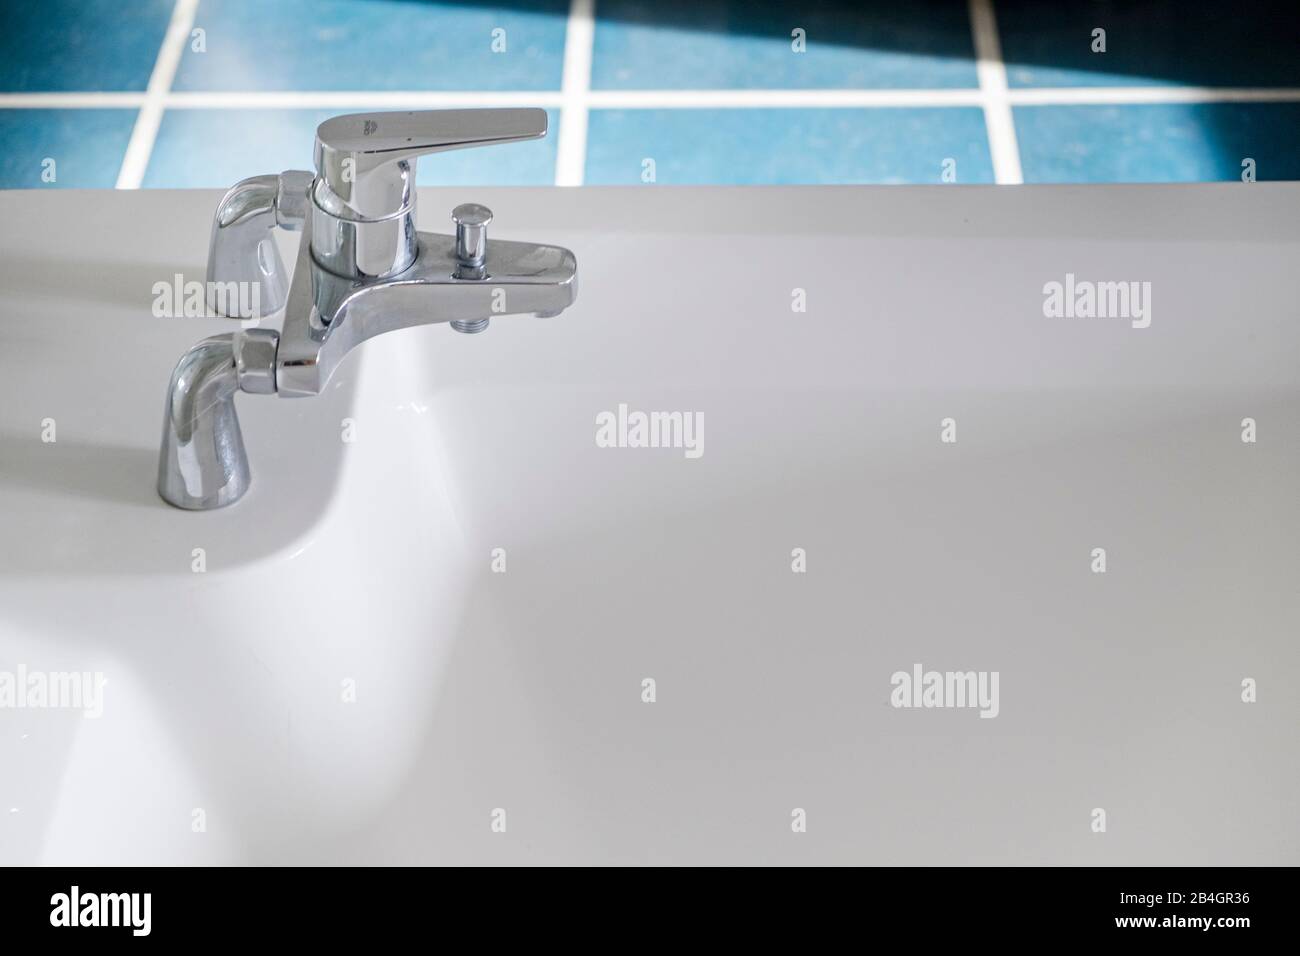 Détail d'un robinet avec baignoire vide Banque D'Images